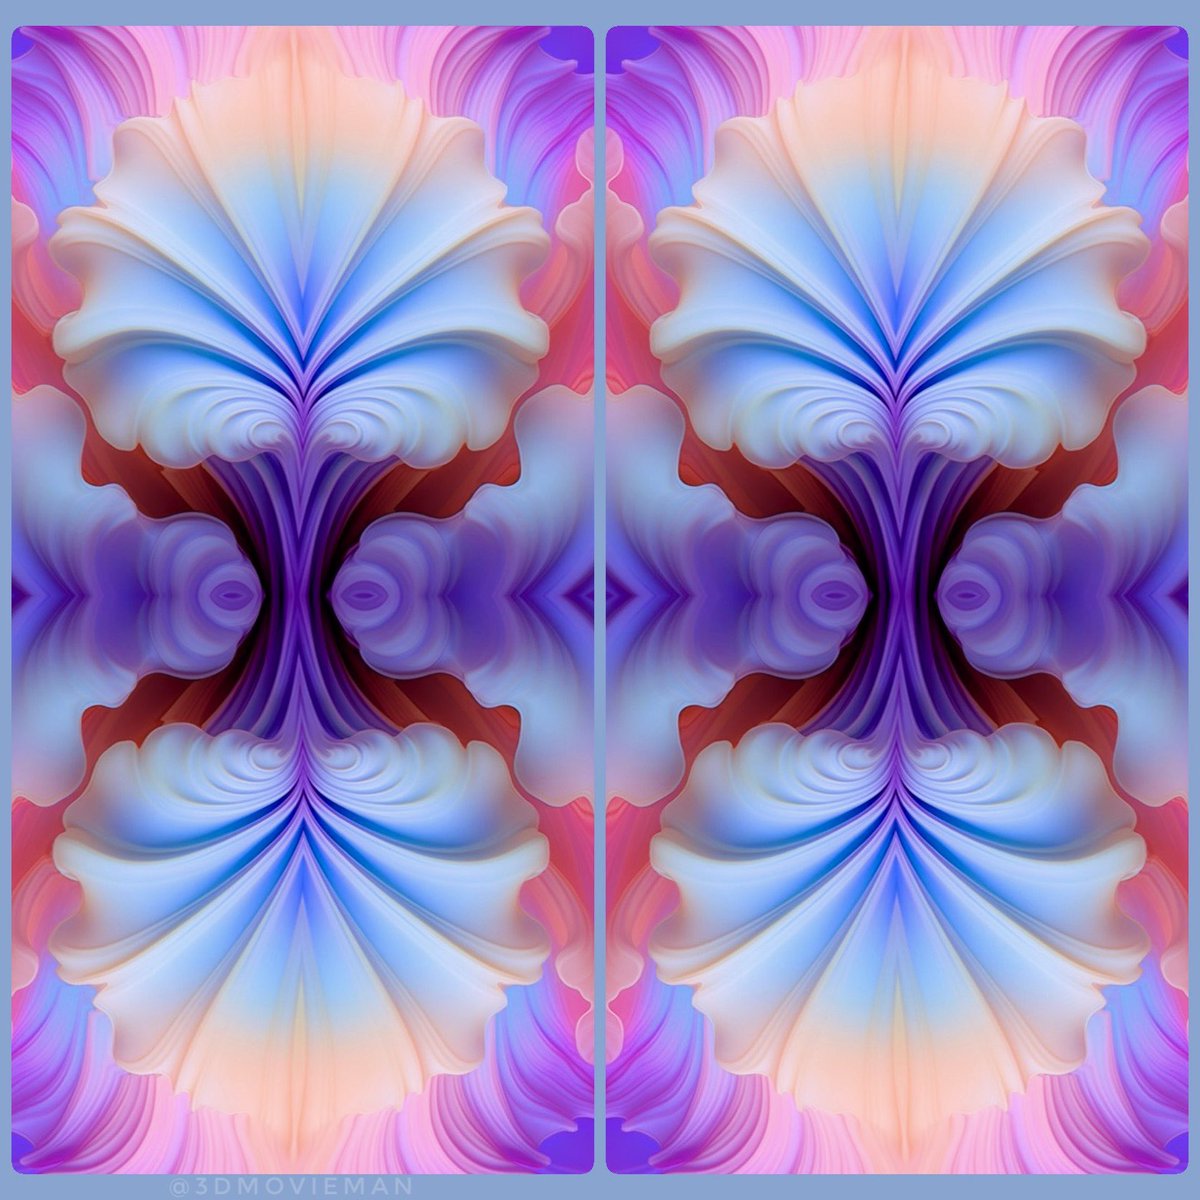 Pastel seashell #stereoscopic #AIart #stereoscopy #midjourneyart #digitalart #synthography #3dart